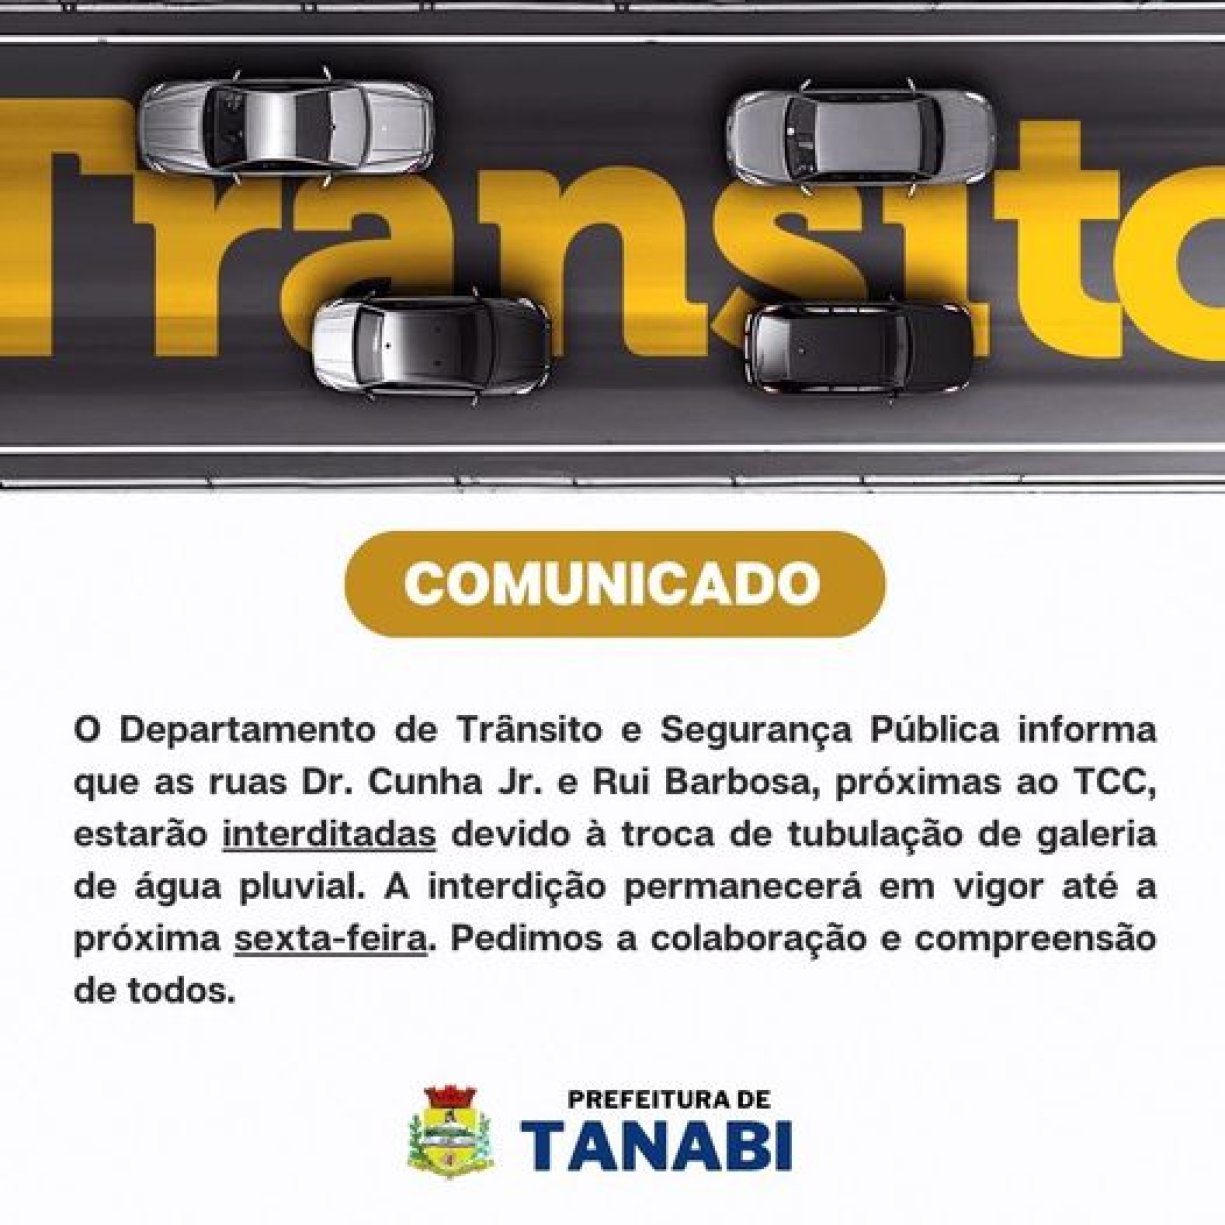 Facebook mostra como segue usuário, mesmo quando não conectado - 28/01/2020  - Tec - Folha